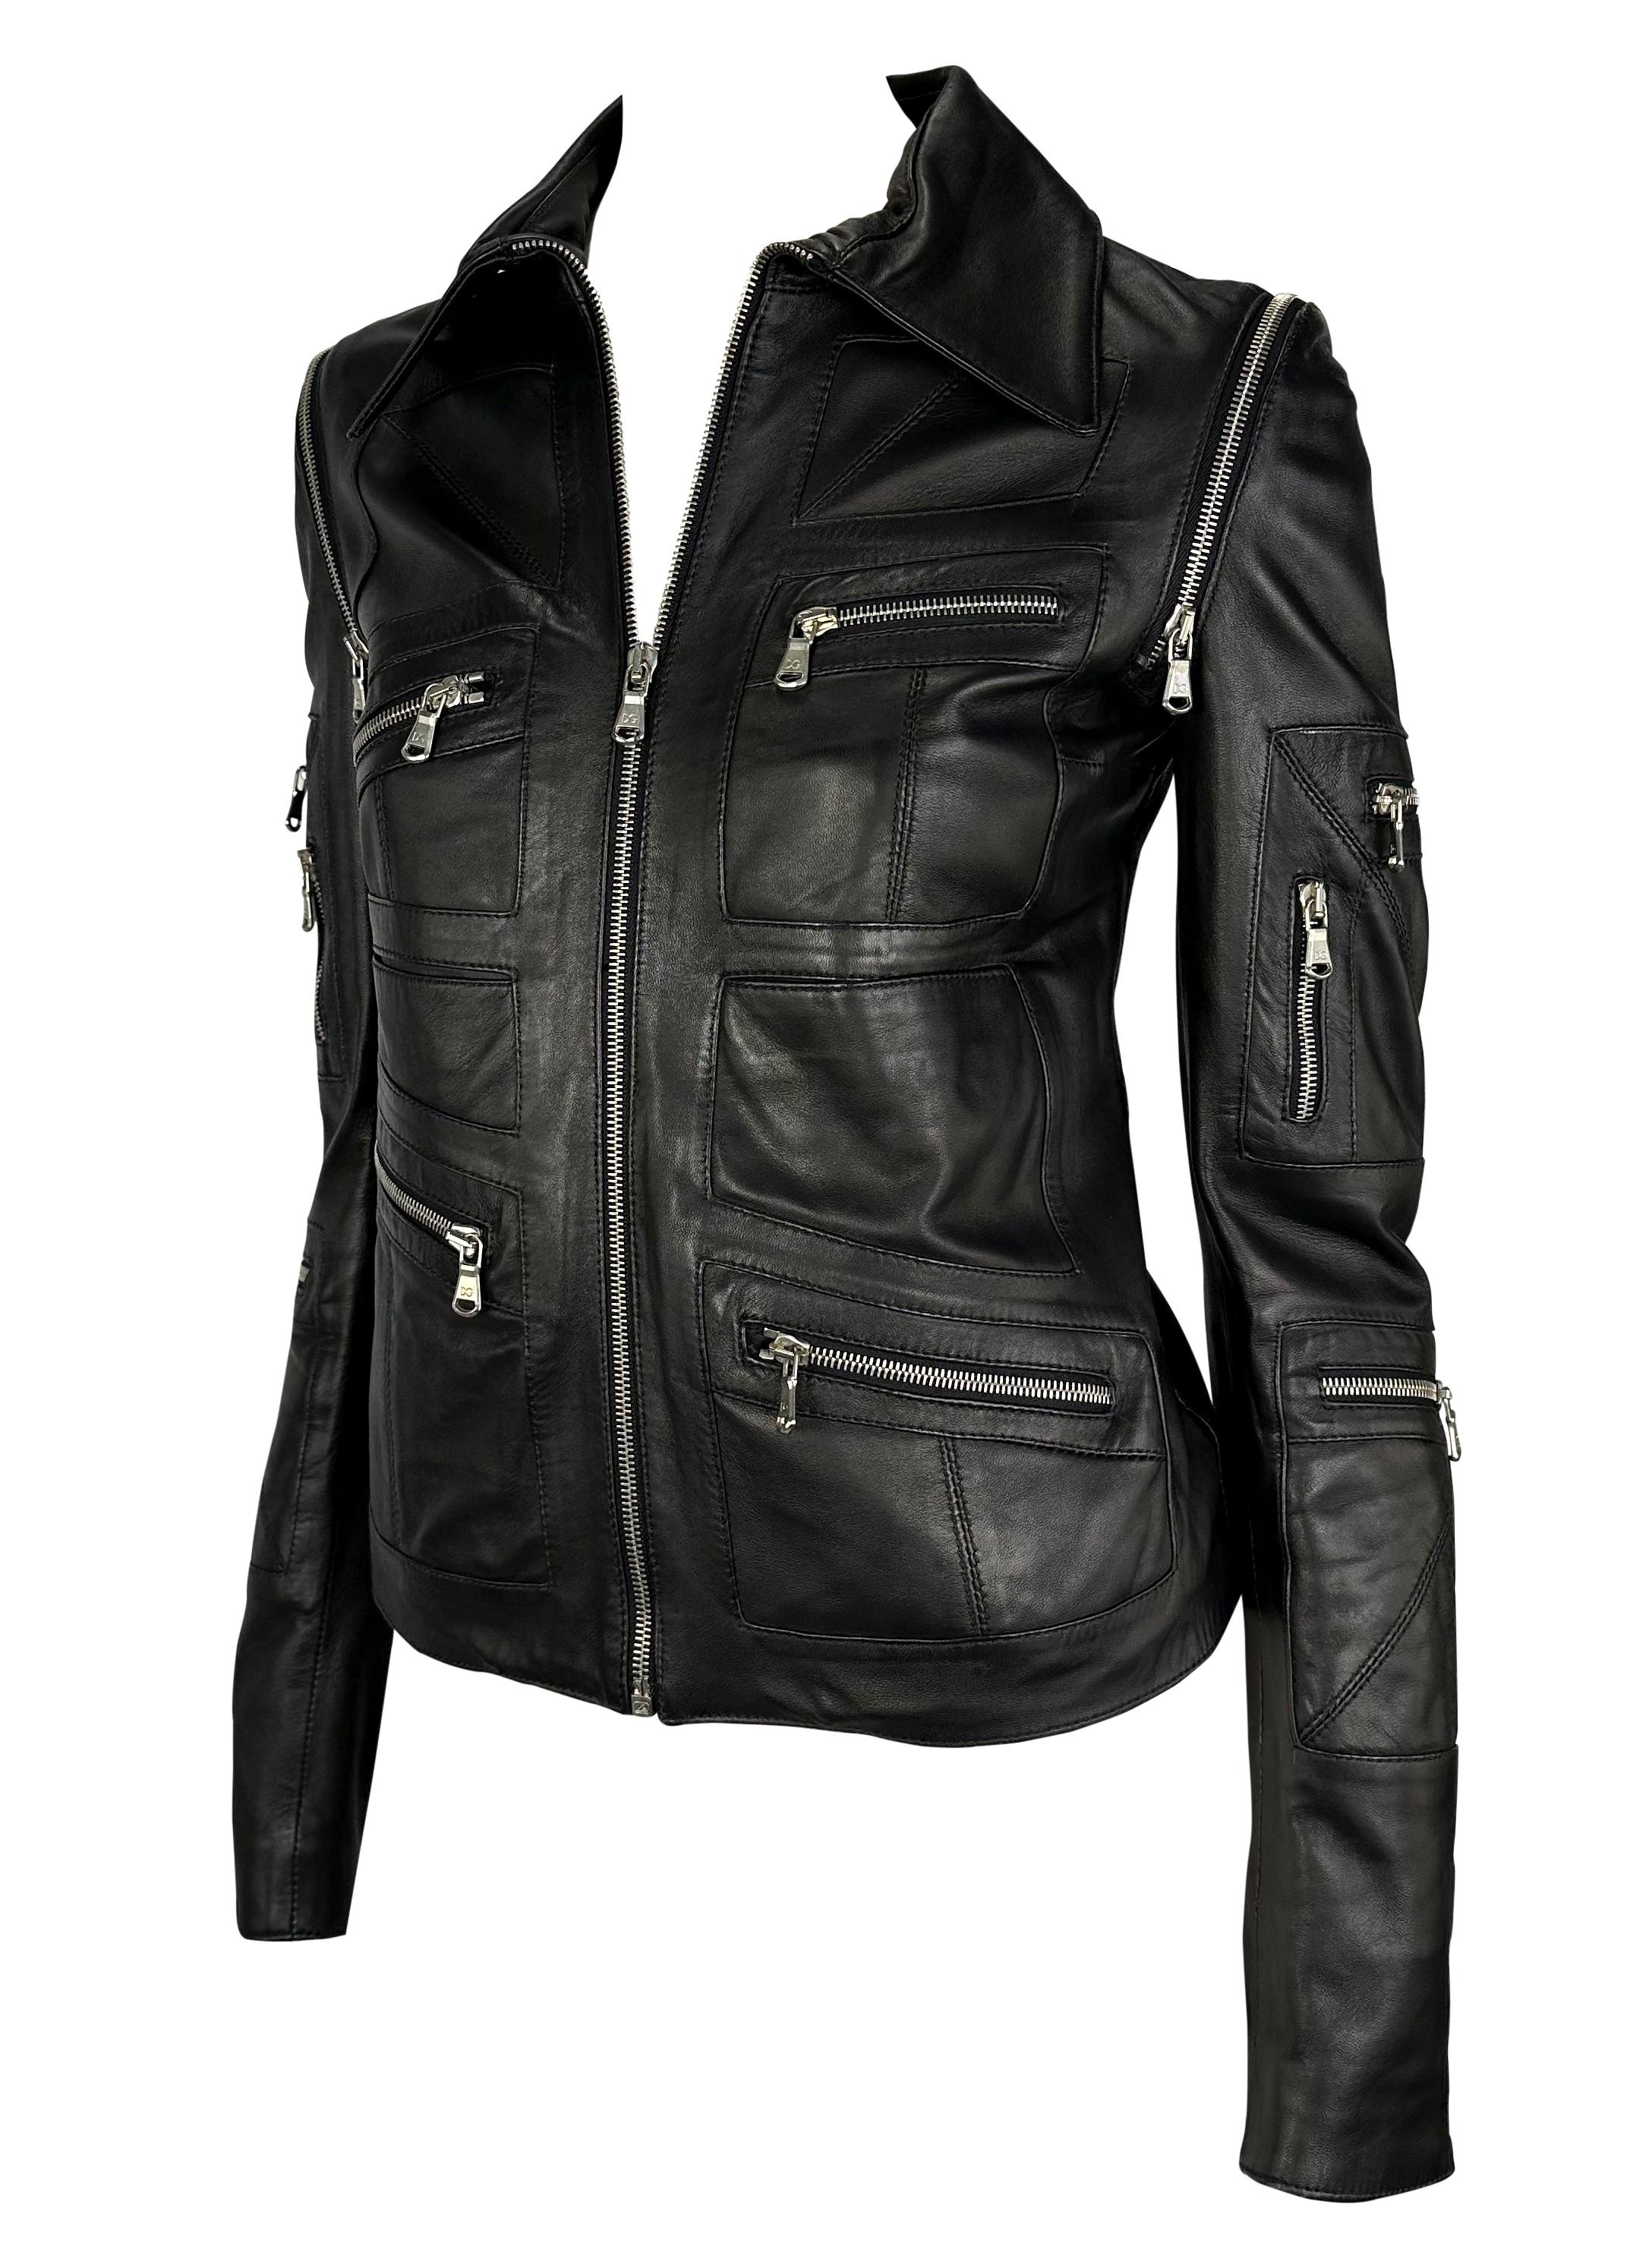 Ich präsentiere eine fabelhafte schwarze Leder-Motojacke mit Reißverschluss von Dolce und Gabbana. Diese unglaubliche Jacke aus den frühen 2000er Jahren ist voller Taschen und Reißverschlüsse. Jeder Reißverschluss an dieser Jacke im Biker-Chic